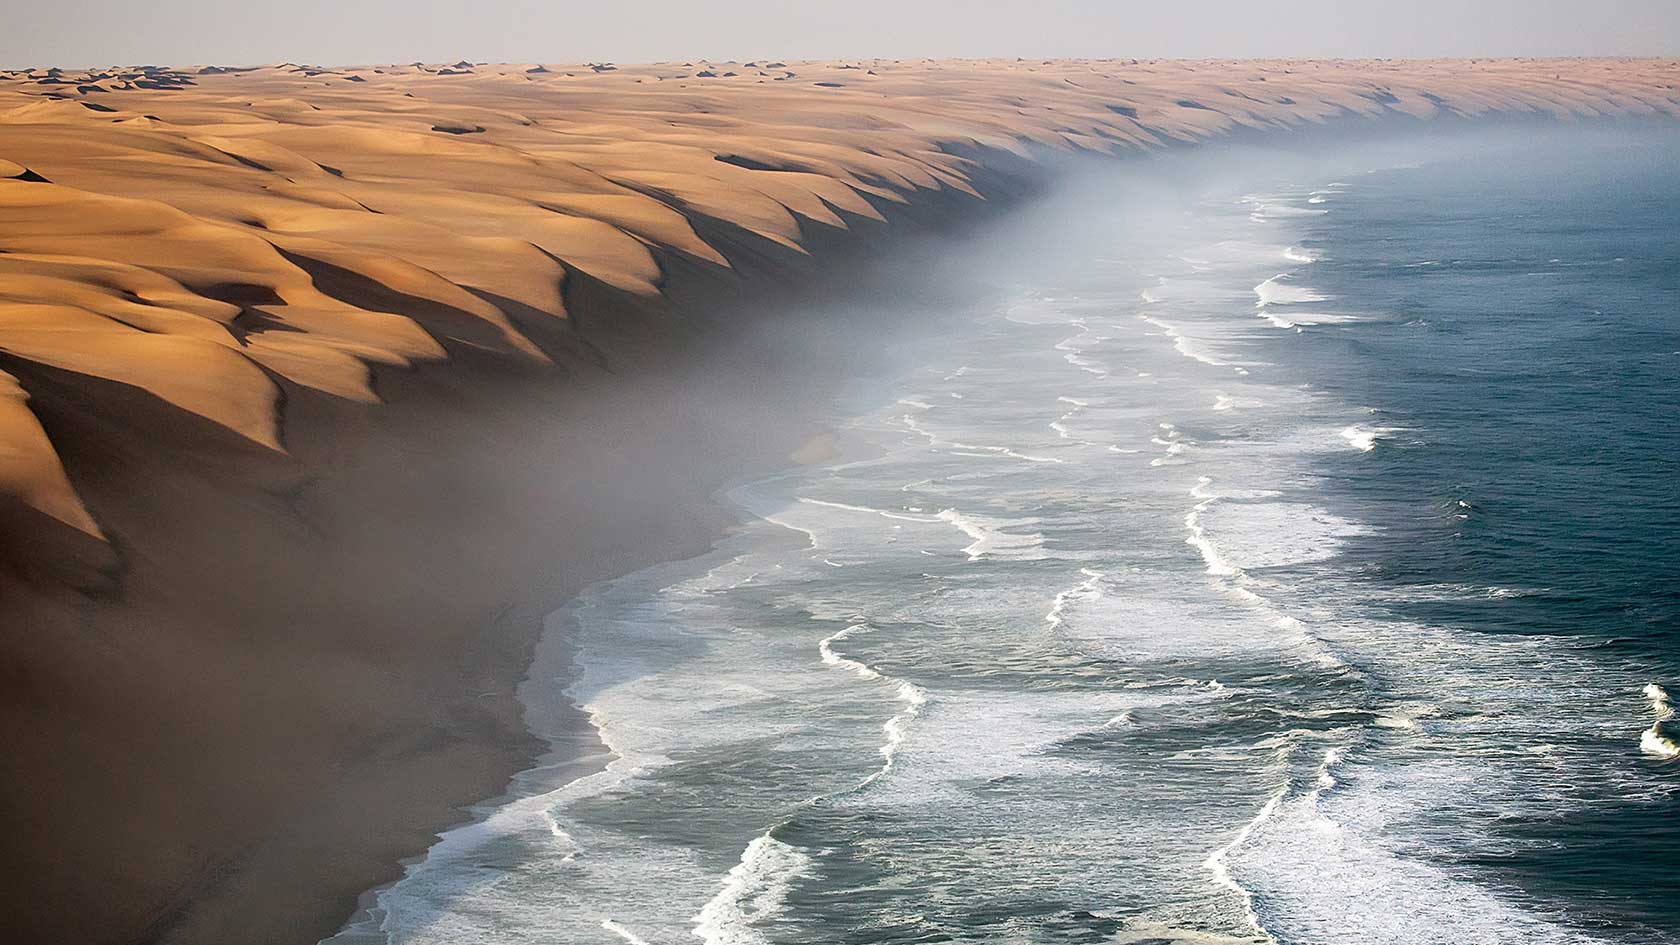 Where the Namib desert meets the sea.